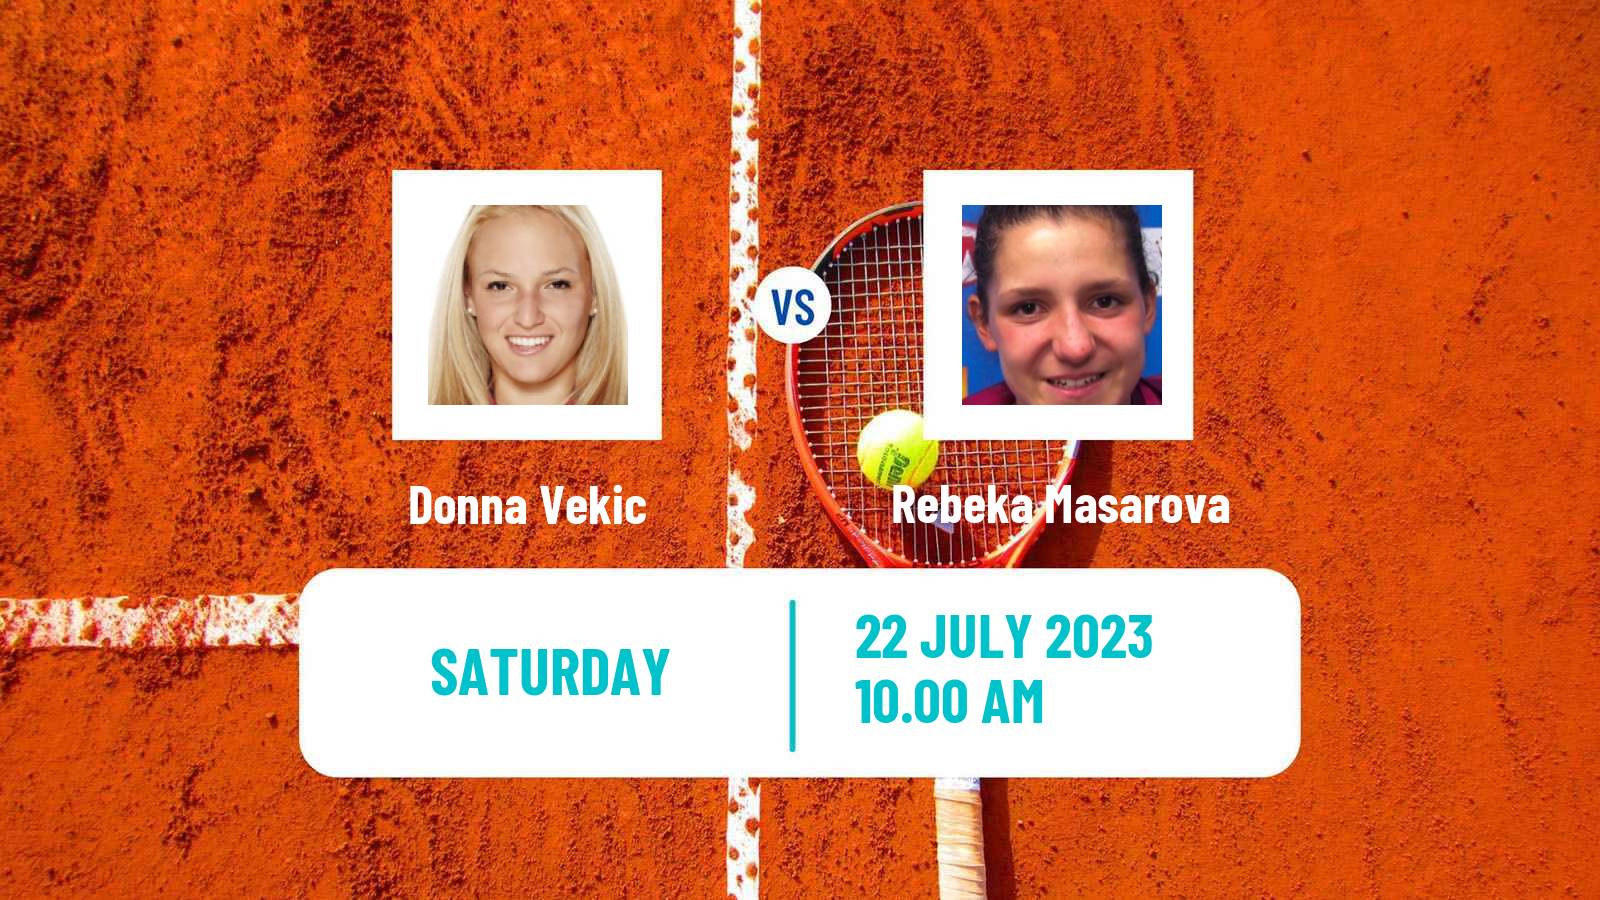 Tennis WTA Hopman Cup Donna Vekic - Rebeka Masarova